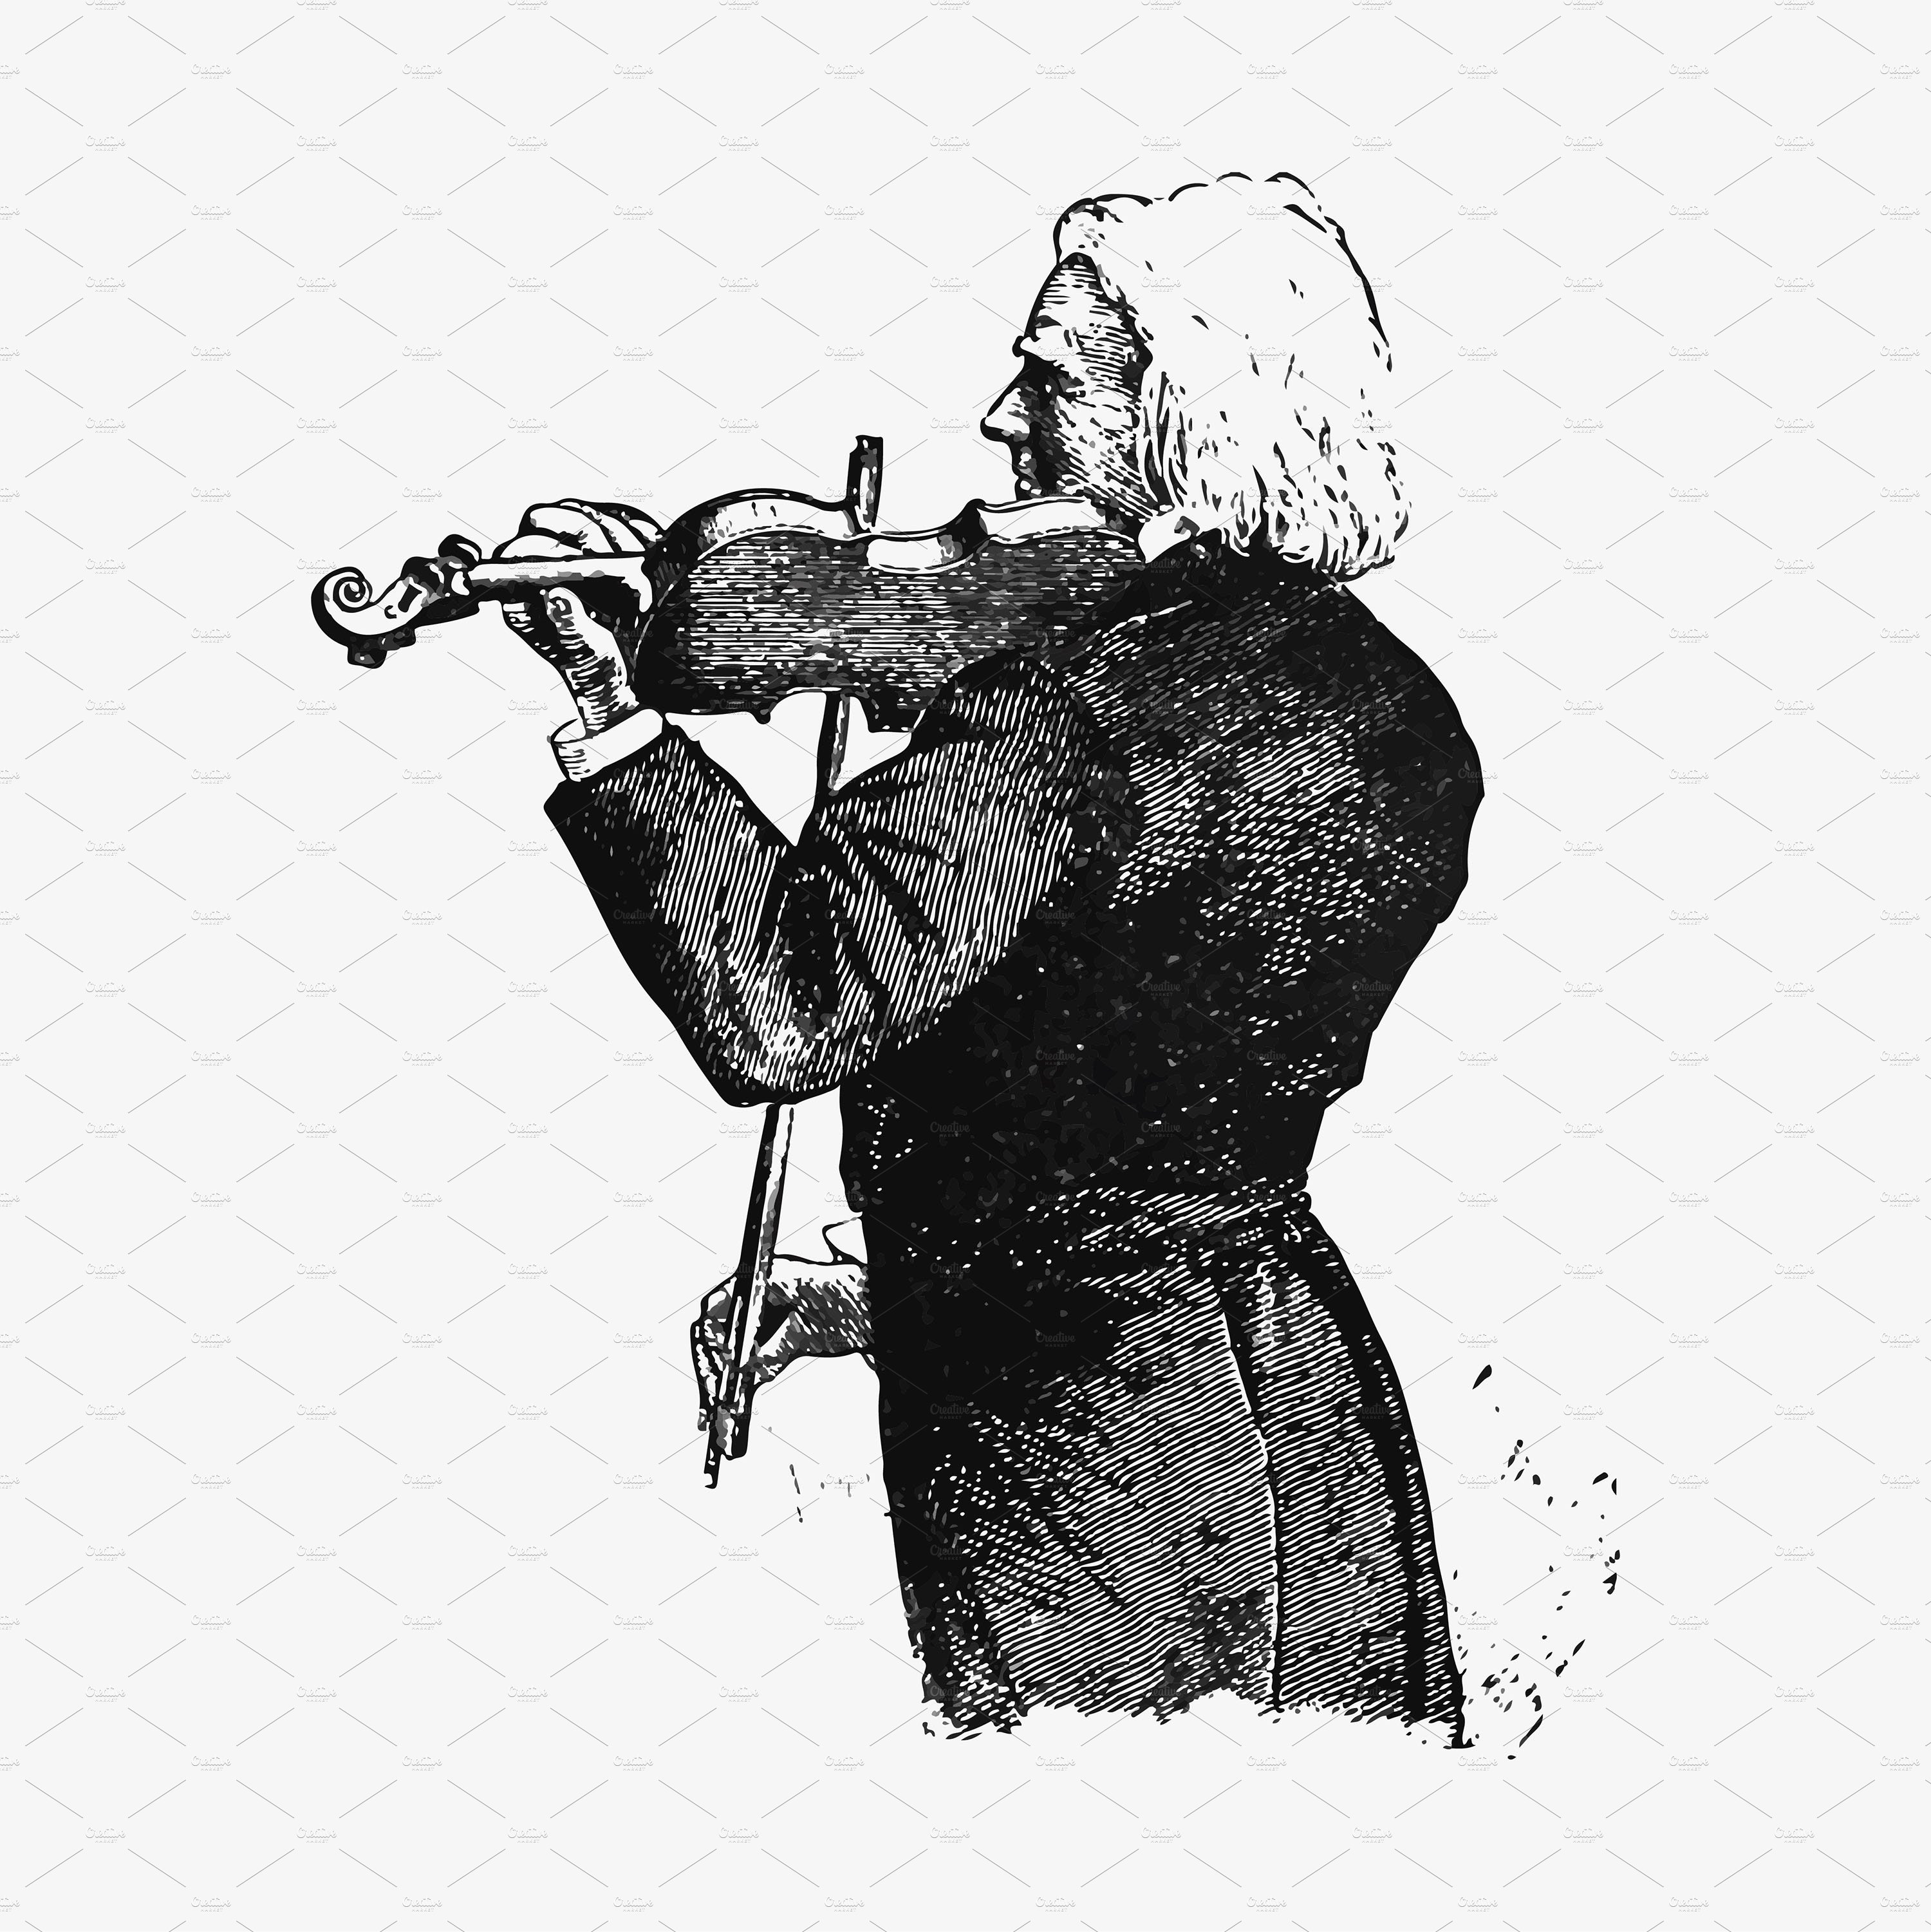 Vintage violinist illustration cover image.